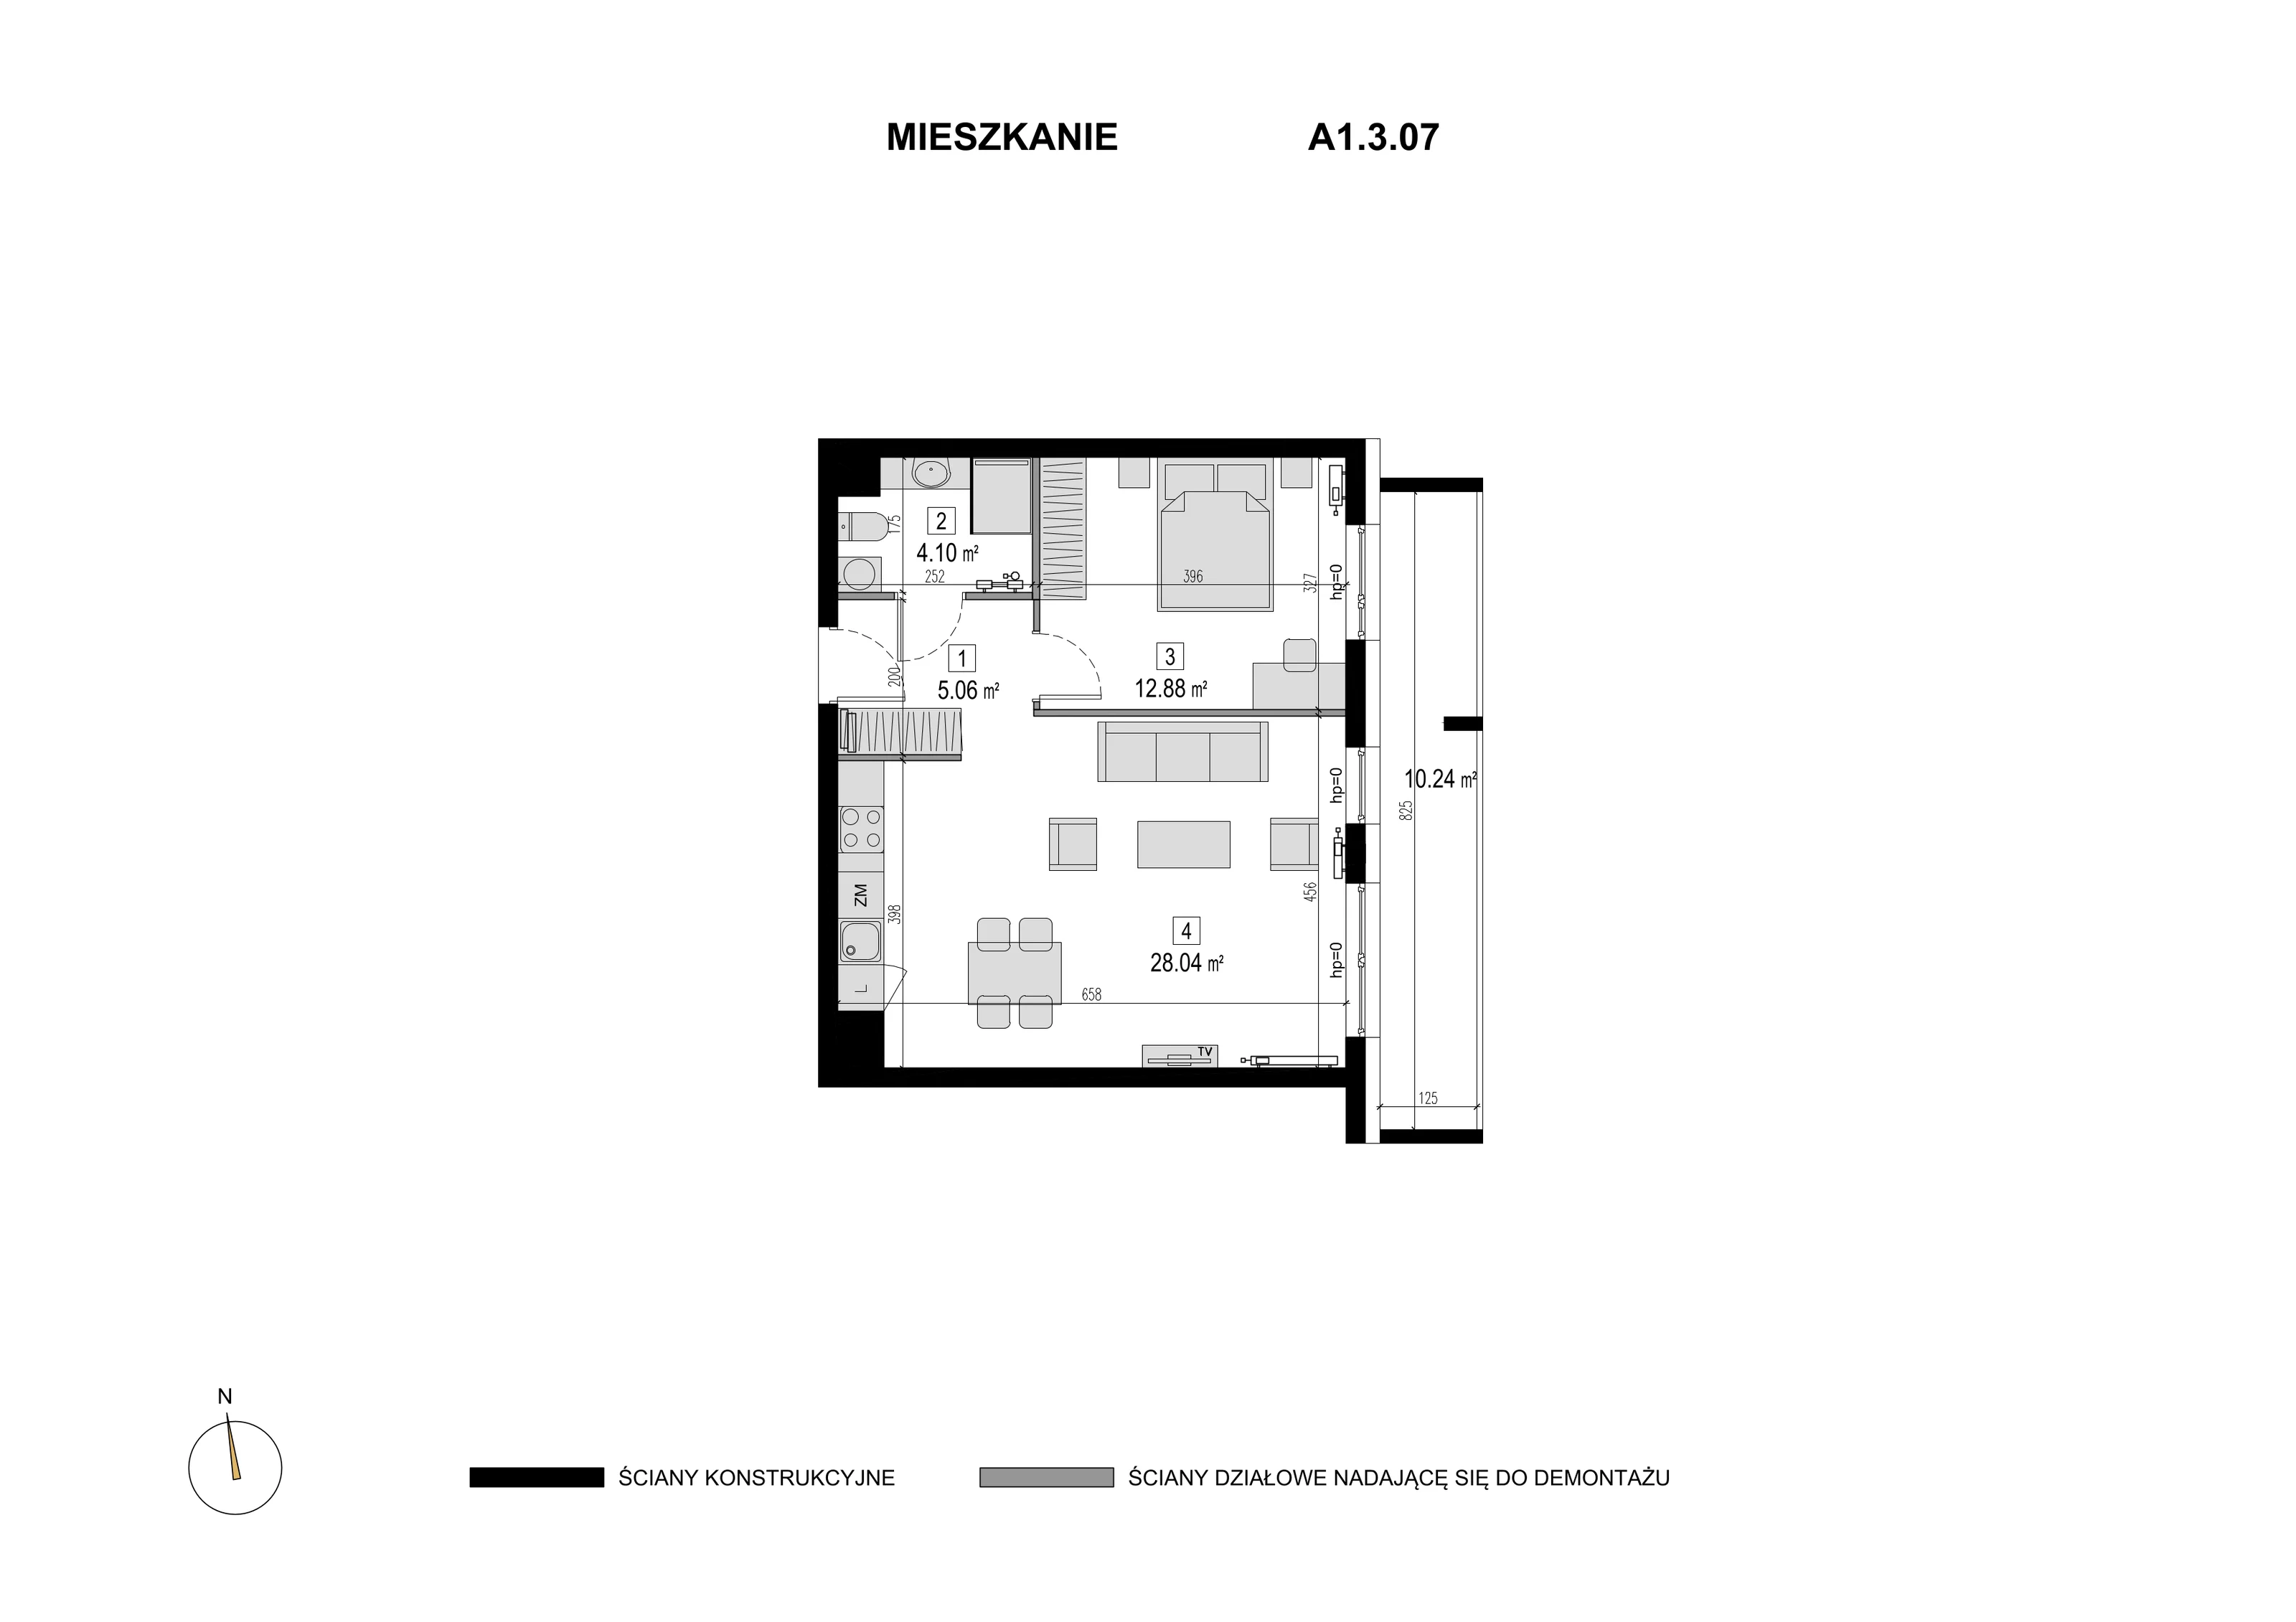 Mieszkanie 50,08 m², piętro 2, oferta nr A1.3.07, Novaforma, Legnica, ul. Chojnowska